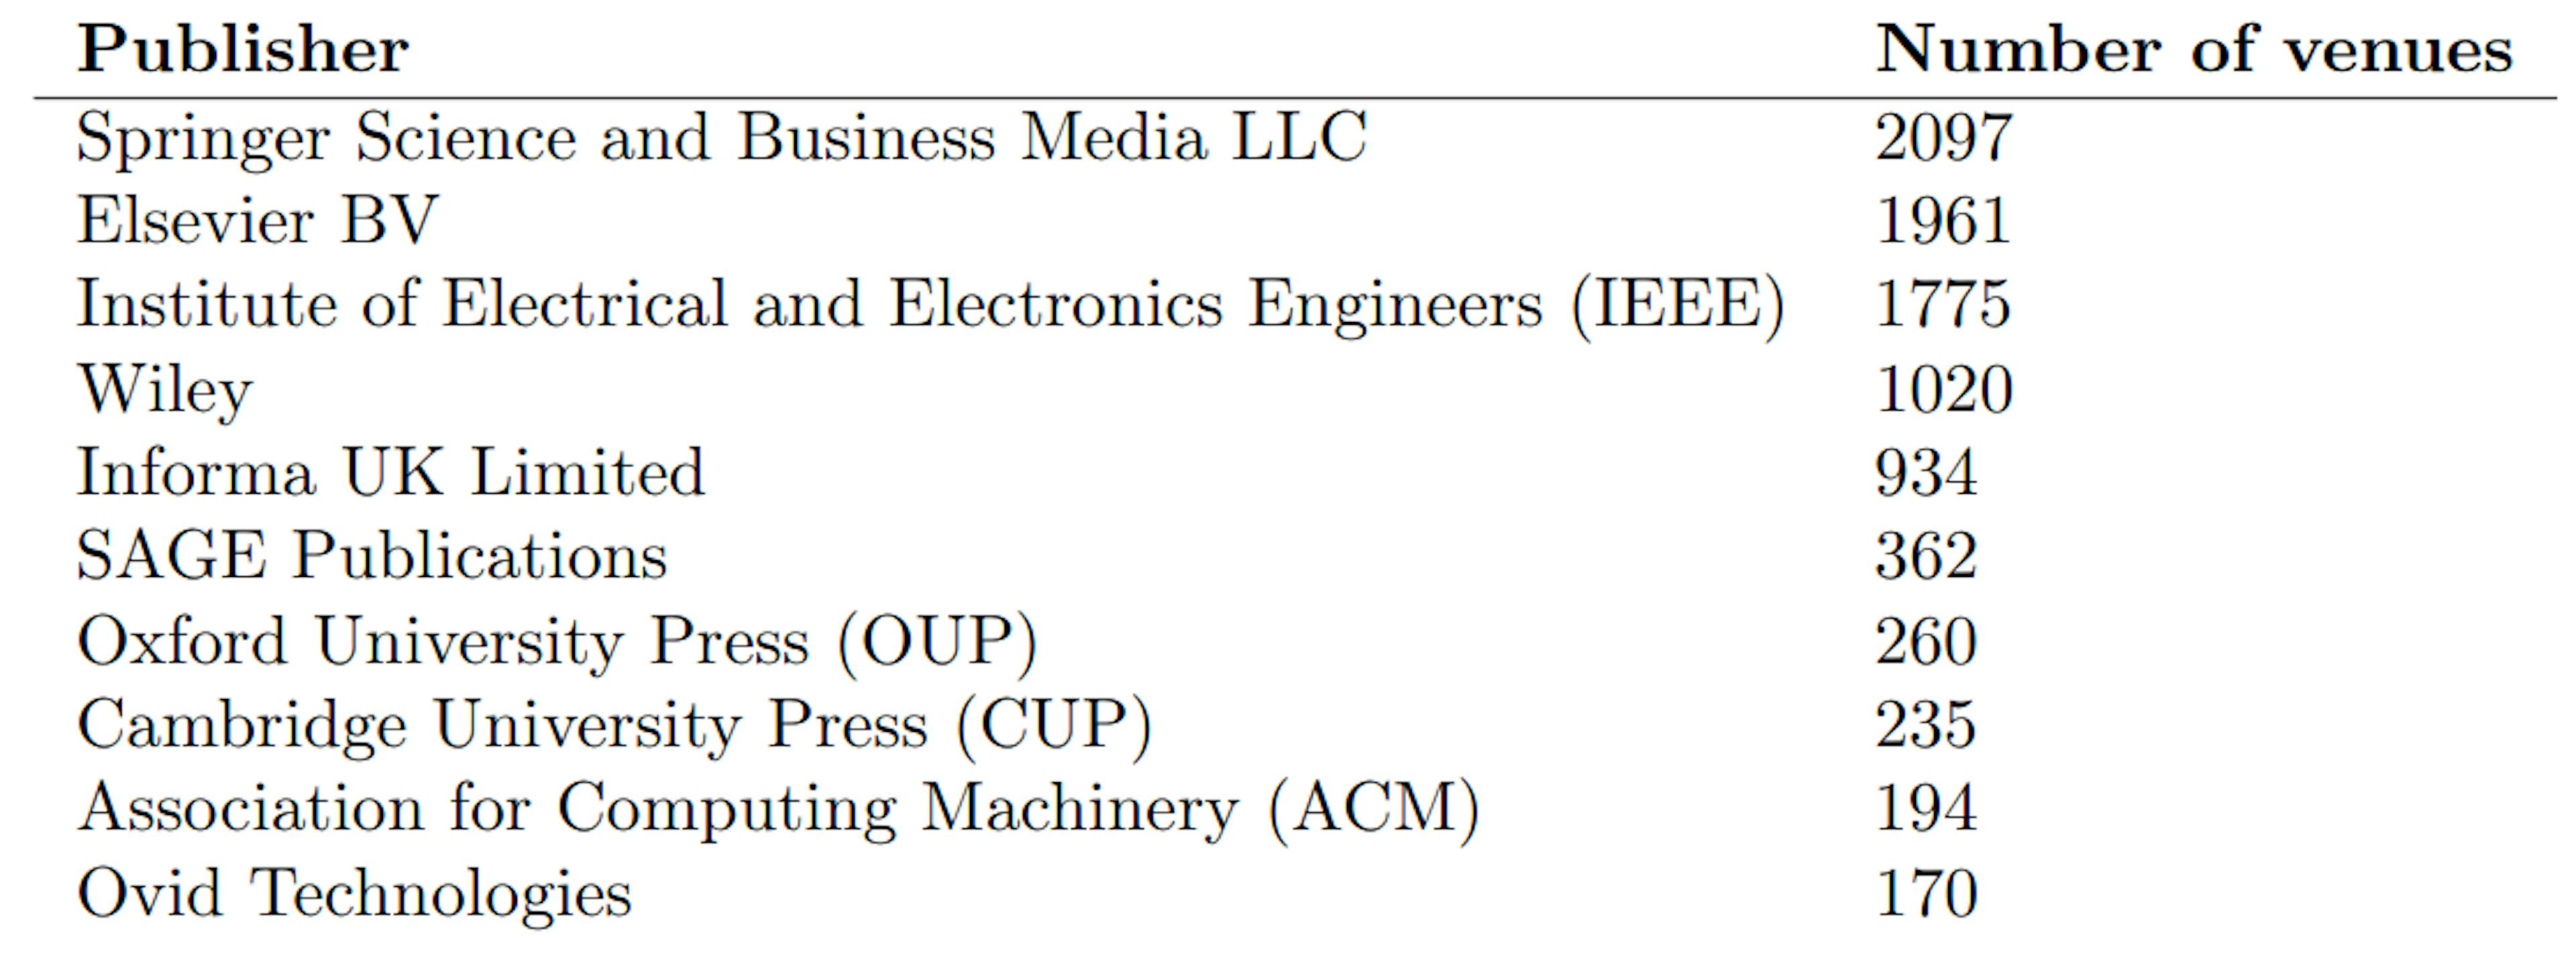 表2: 会場数別上位10社の出版社